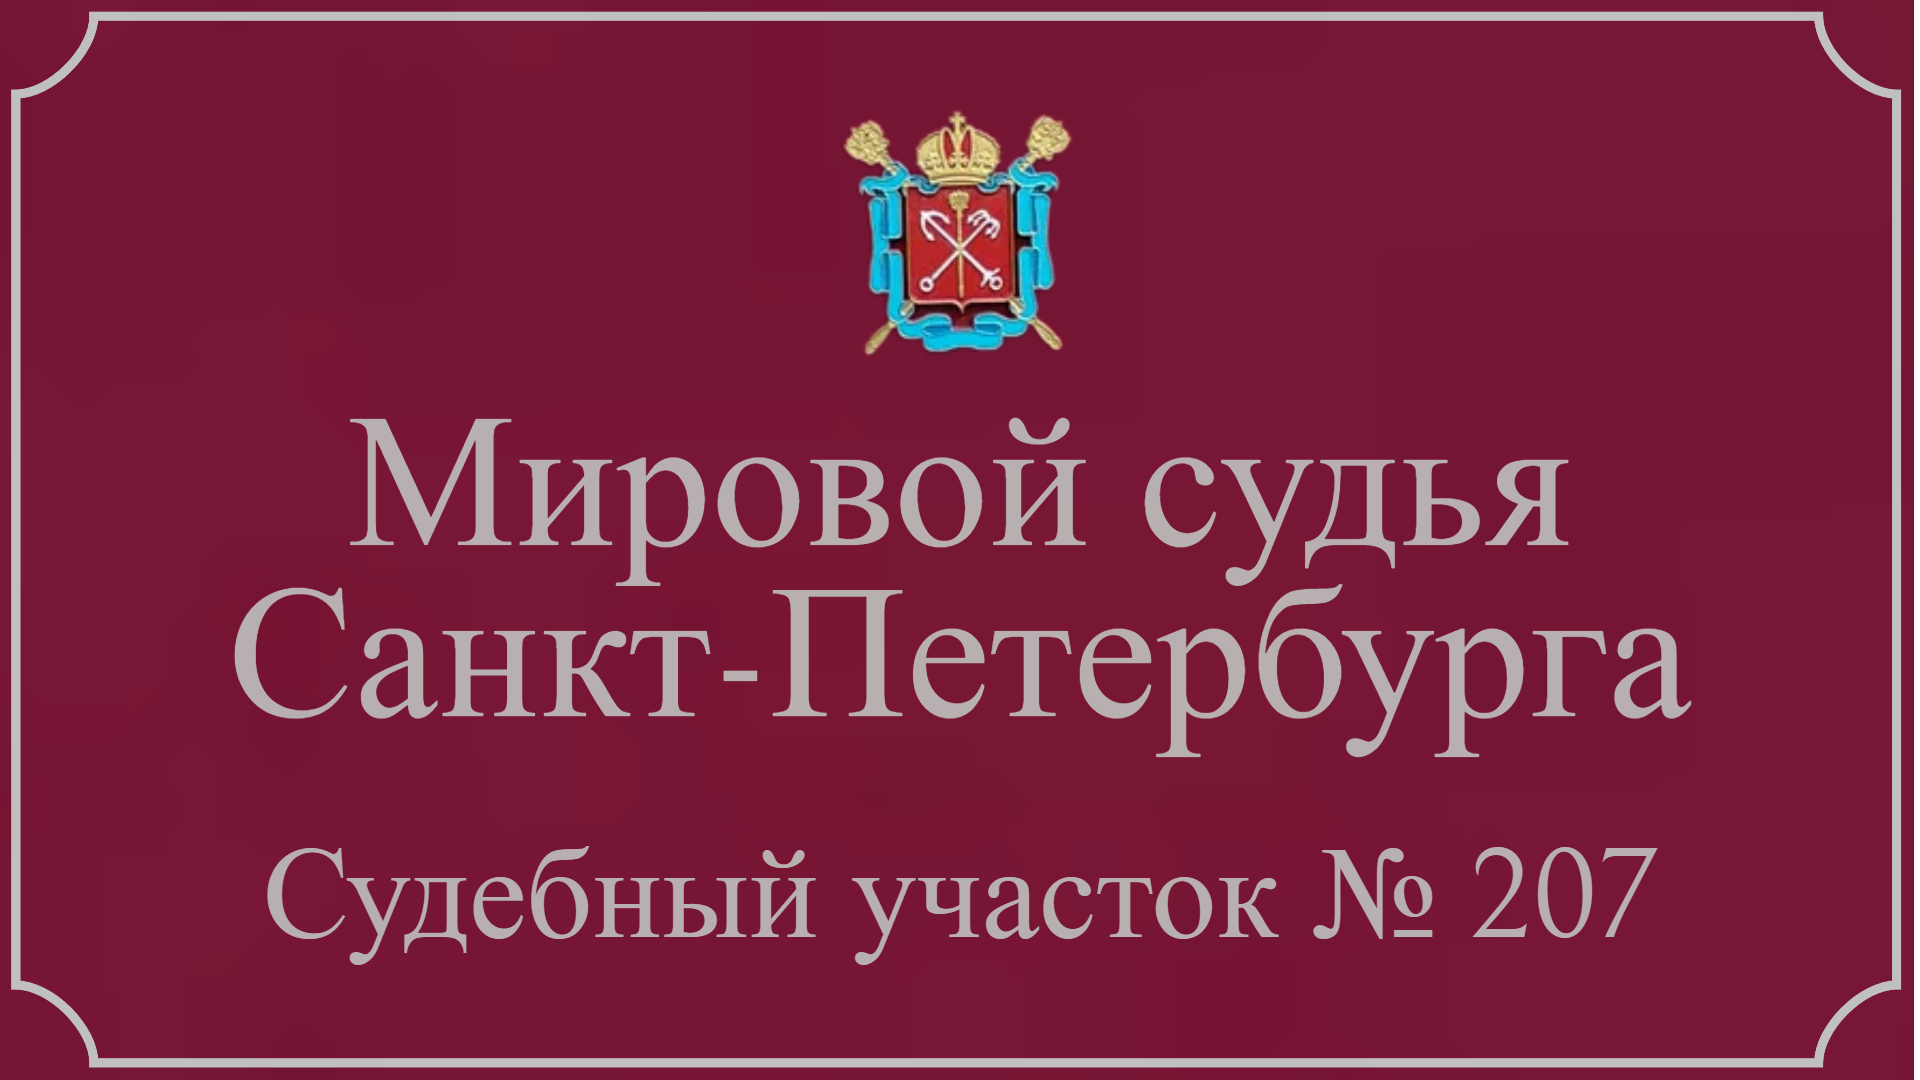 Информация по 207 судебному участку в Санкт-Петербурге.